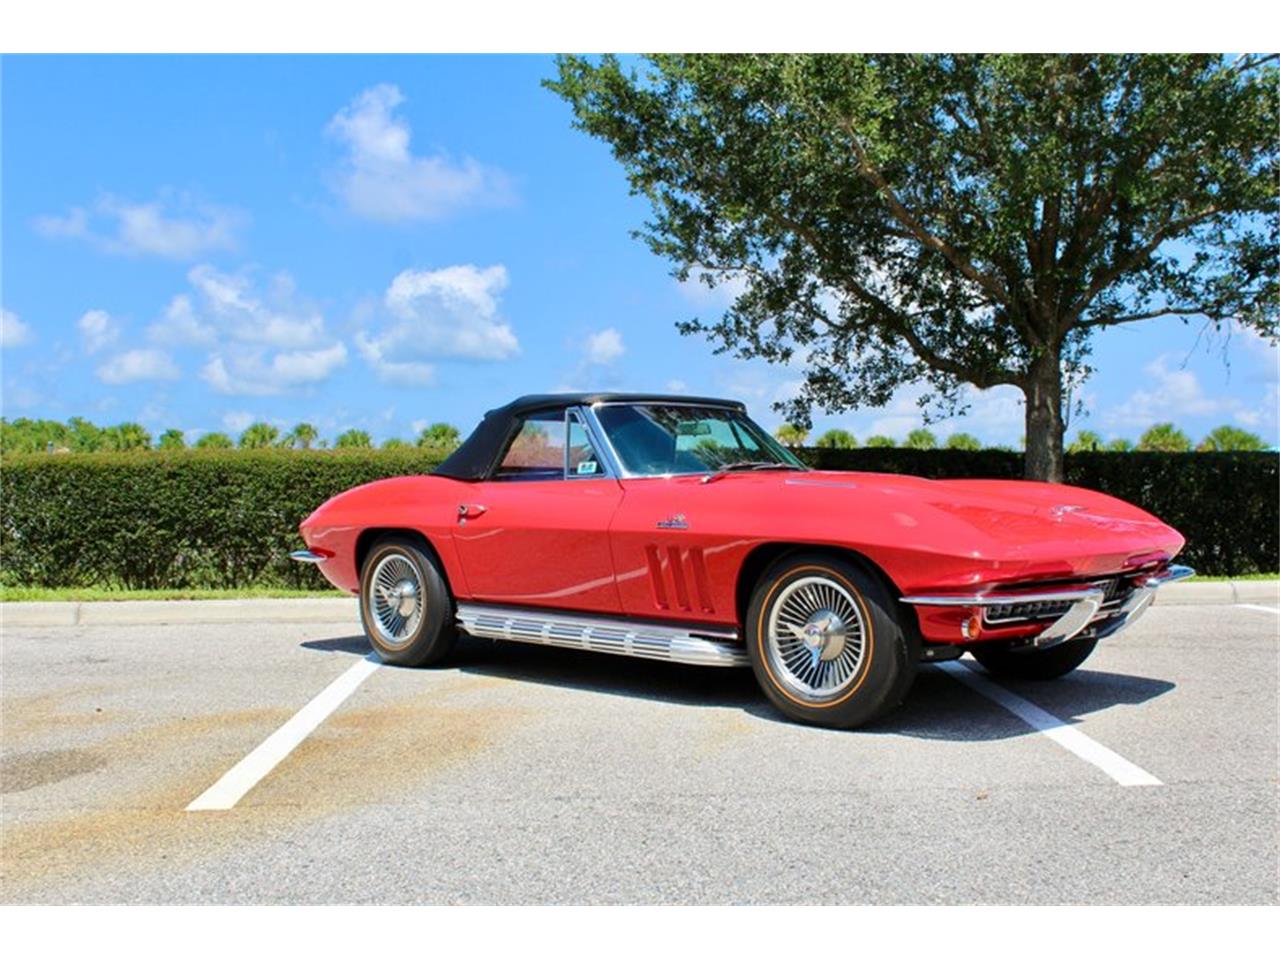 For Sale: 1966 Chevrolet Corvette in Sarasota, Florida for sale in Sarasota, FL